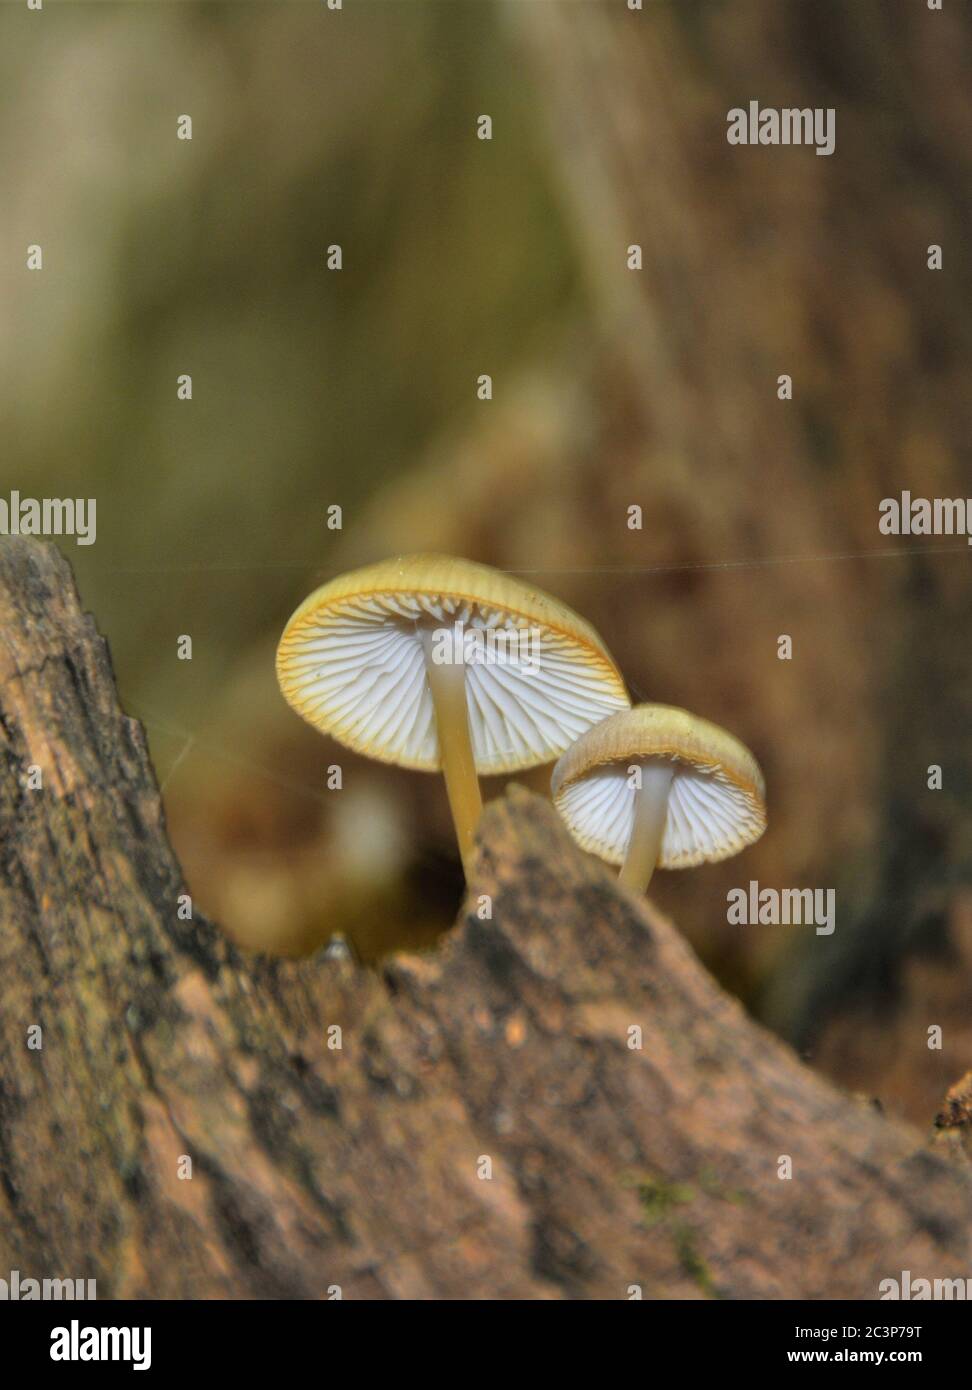 Low-Winkel Schuss von exotischen Pilzen auf dem Stamm der Ein Baum, der in einem Wald gefangen ist Stockfoto